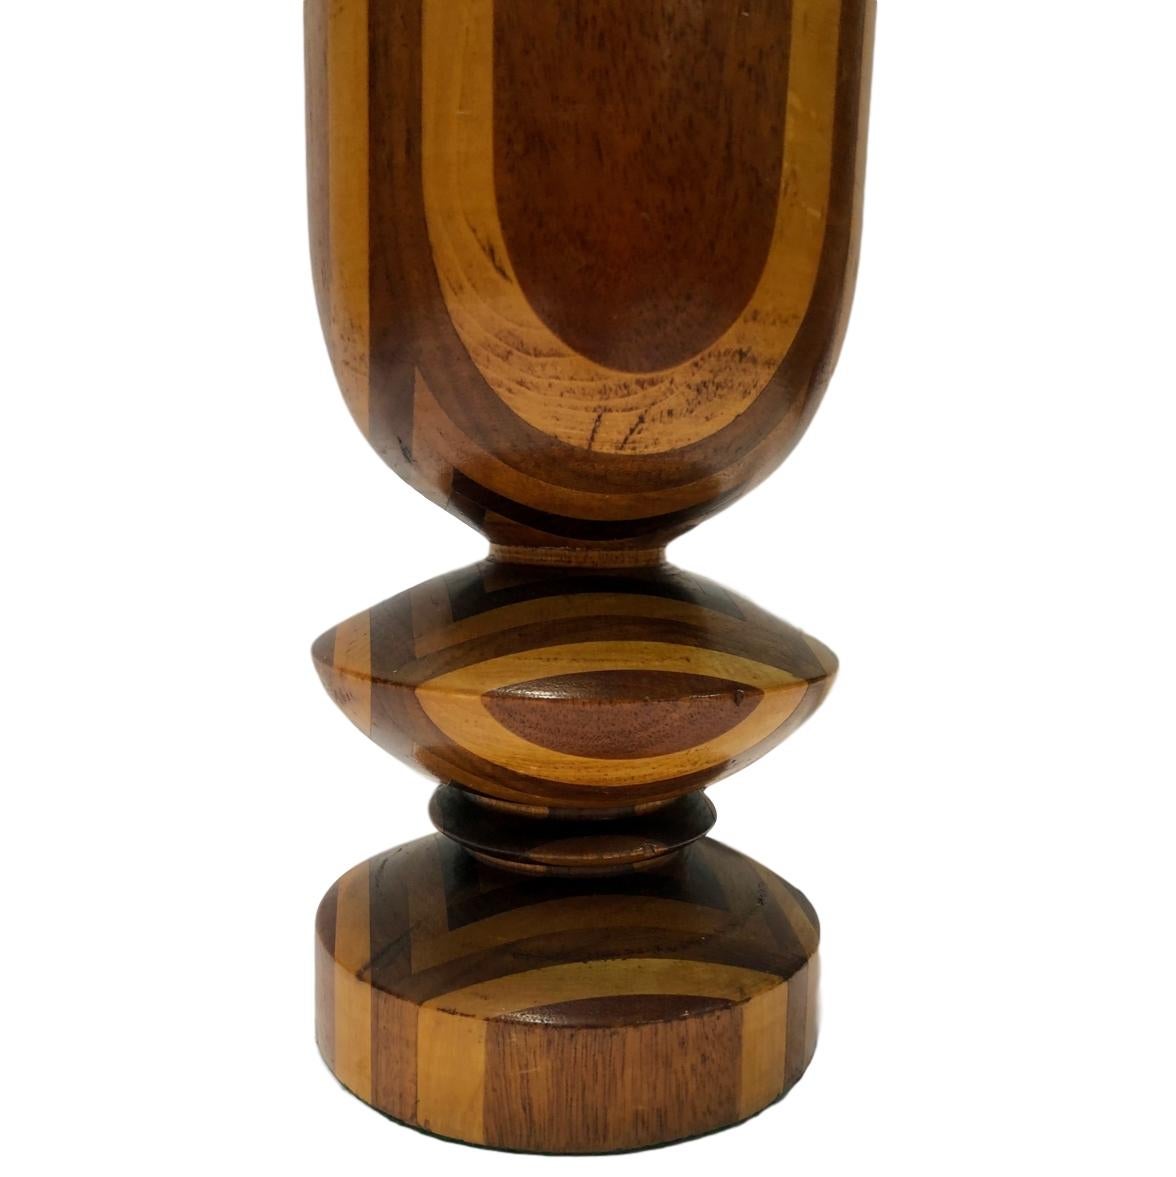 Une seule lampe de table italienne en bois tourné bicolore datant des années 1950.

Mesures :
Hauteur du corps : 15
Diamètre : 6